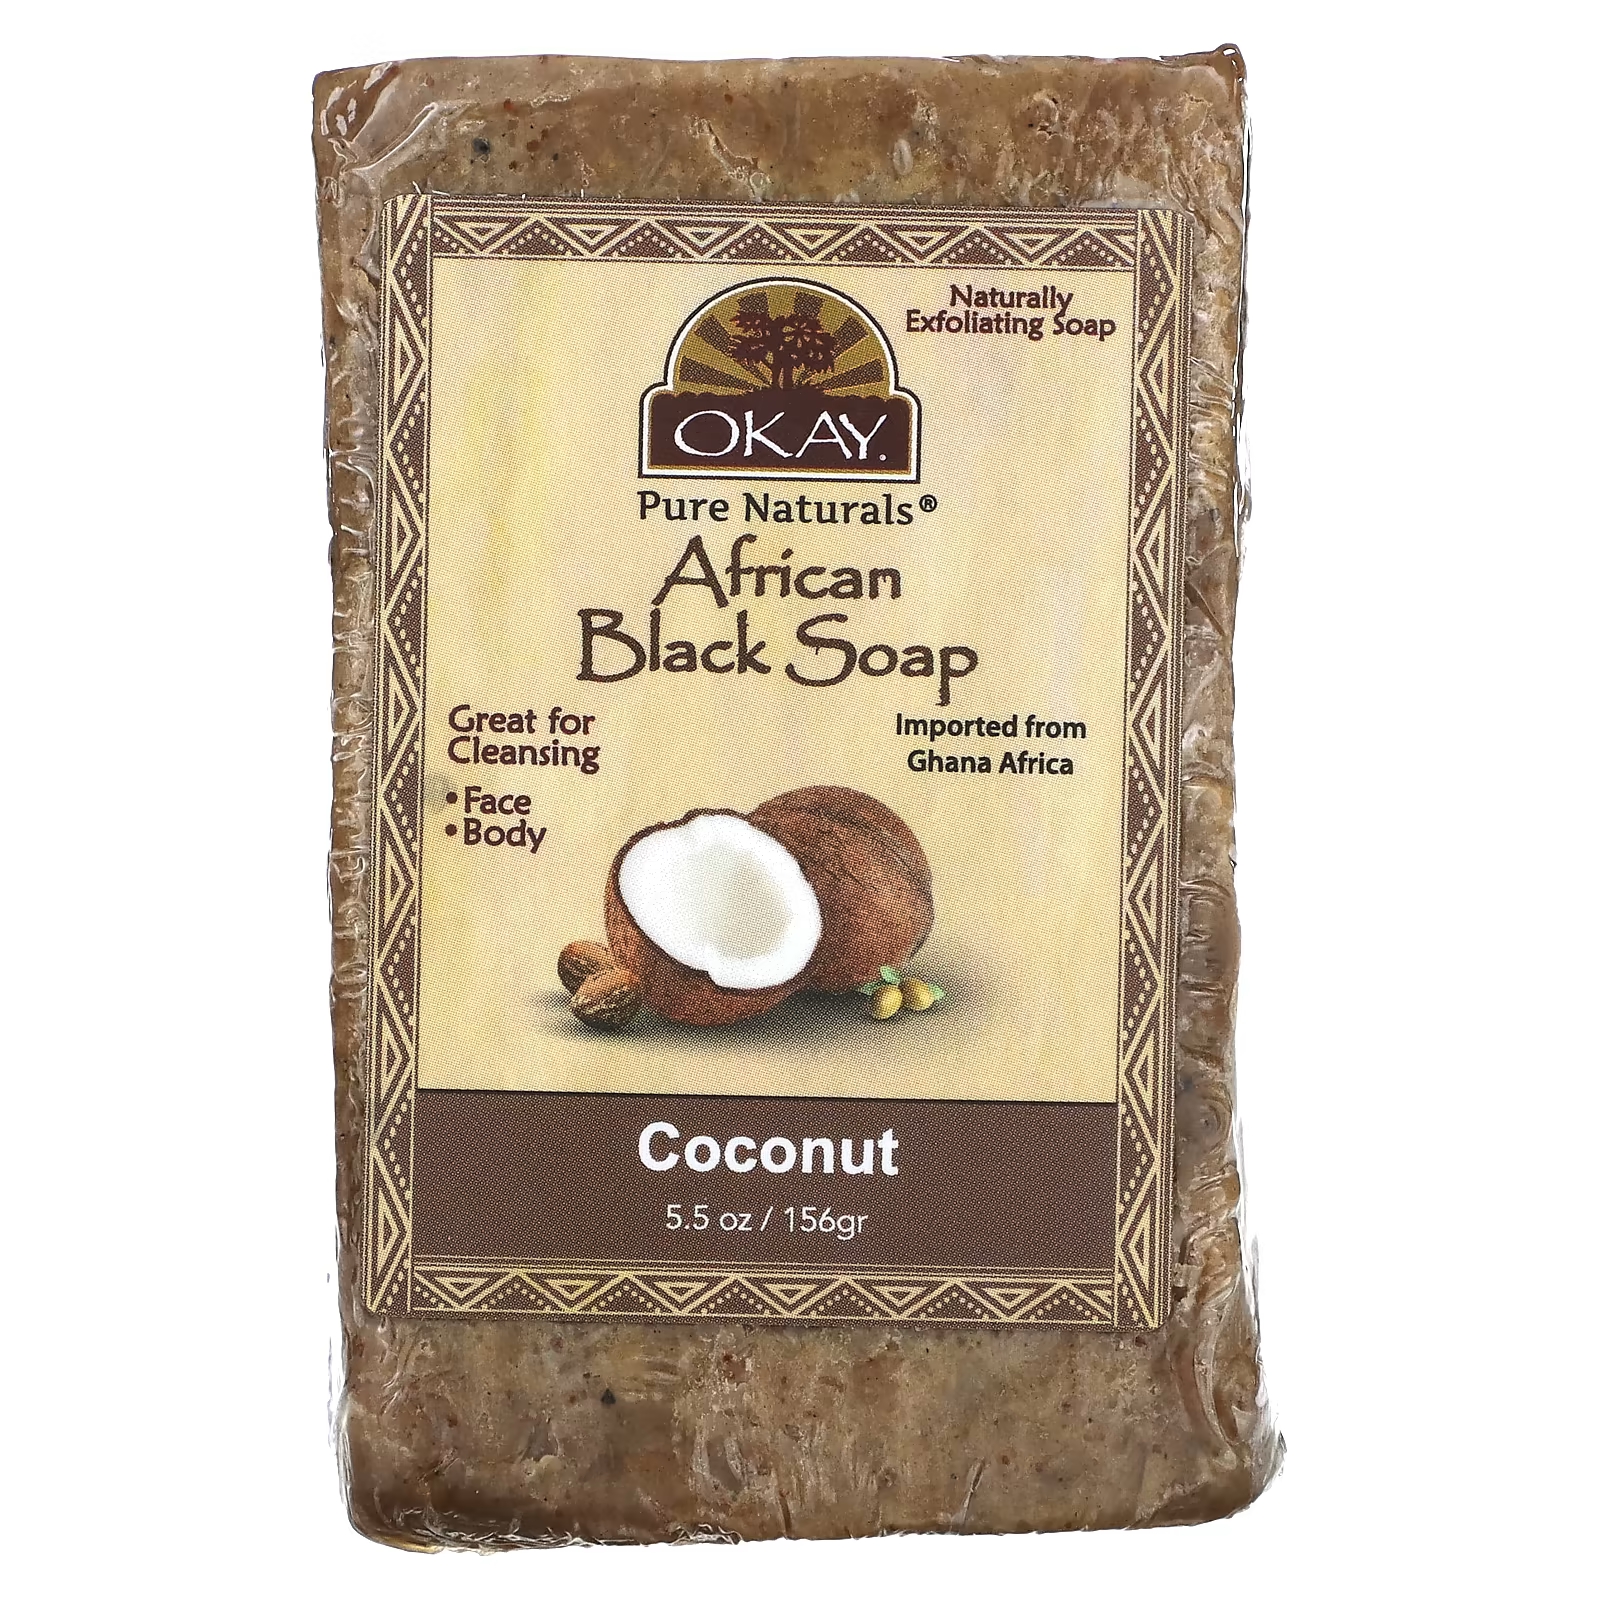 OK Pure Naturals Африканское черное мыло с кокосом, 5,5 унций (156 г) Okay Pure Naturals okay pure naturals африканское черное мыло розмарин 156 г 5 5 унции